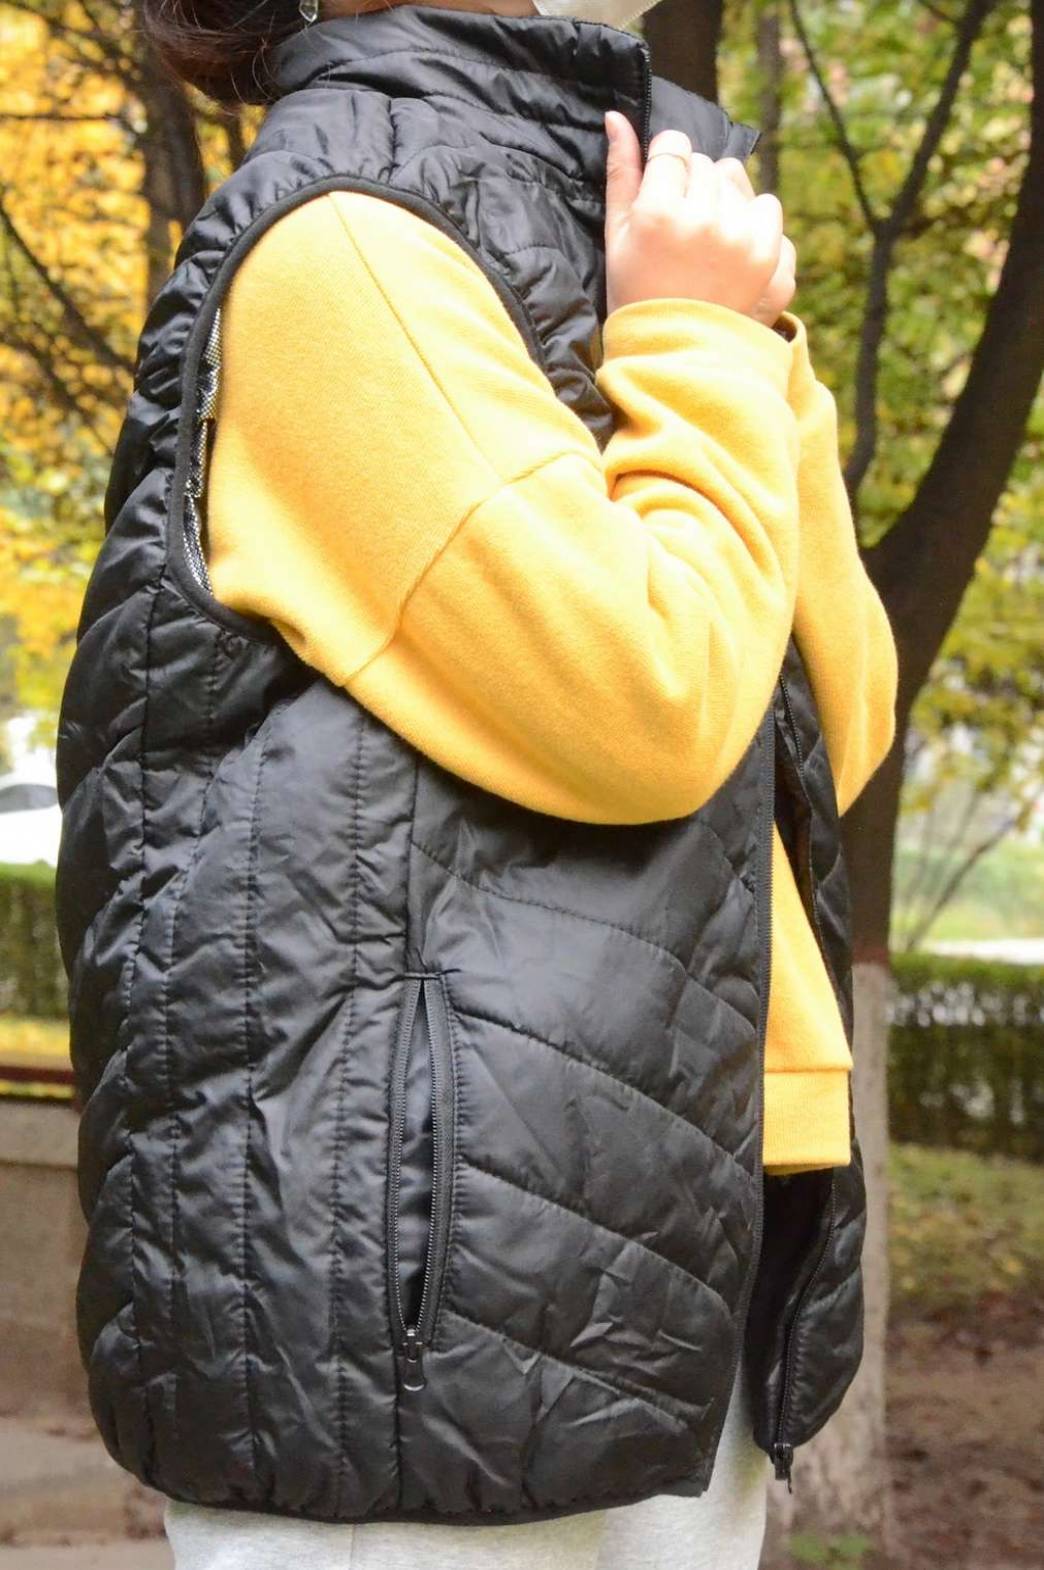 Best Heated Jacket For Women